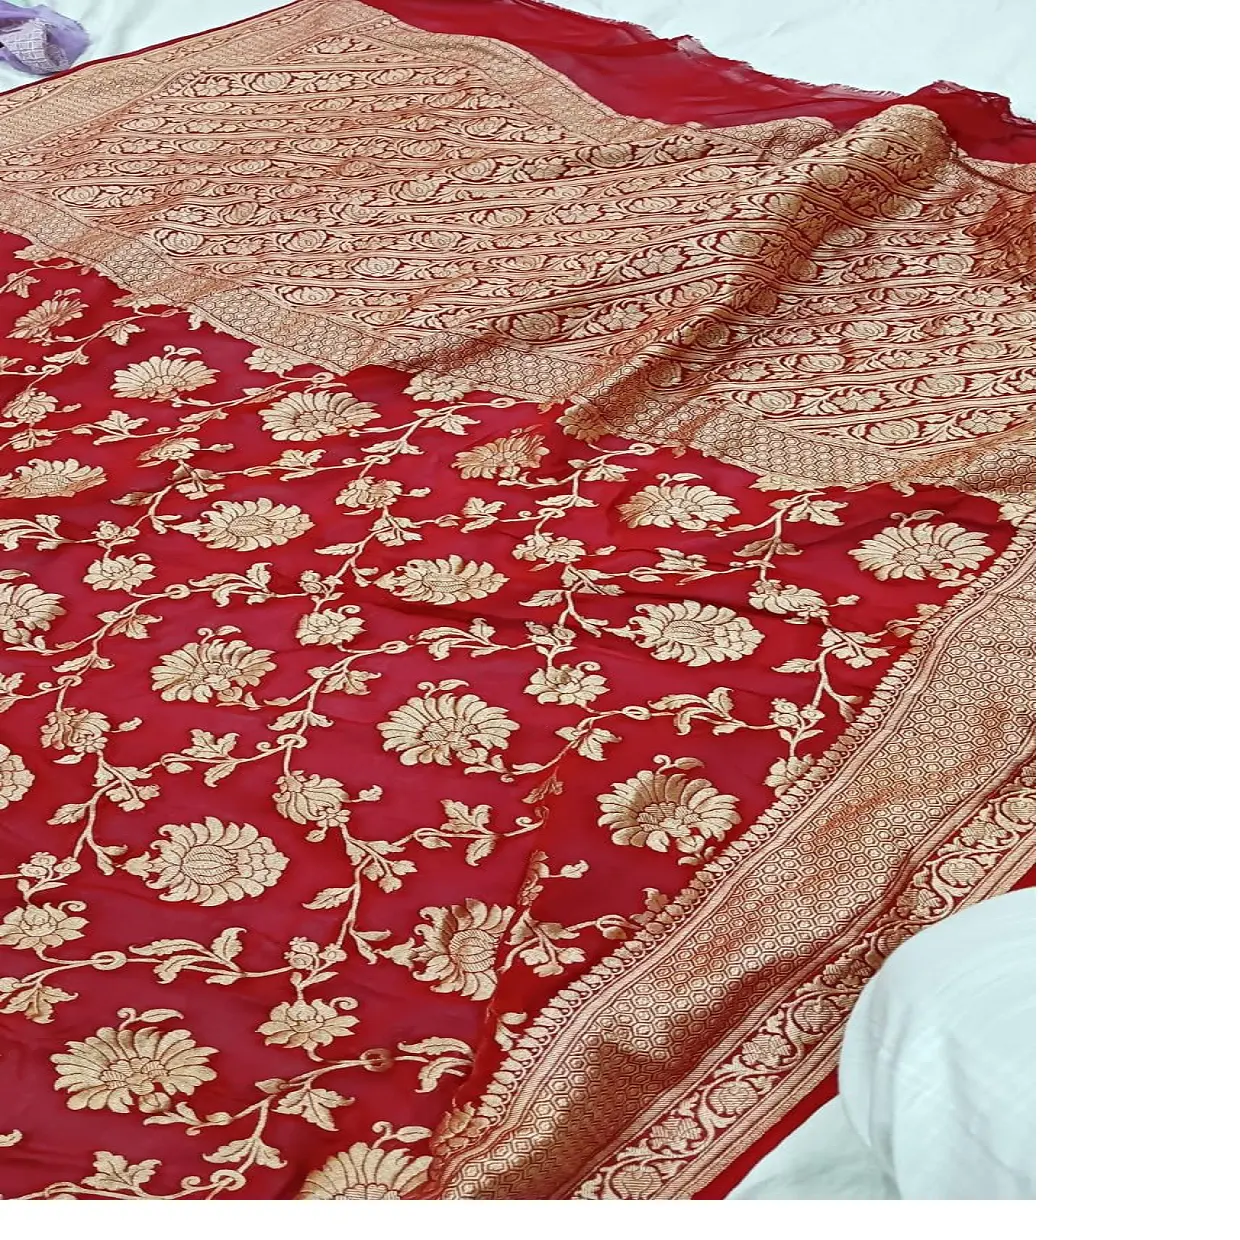 Maßge schneiderte Brokat Banarsi Seide Baumwoll schals und Stolen mit komplizierten indischen Thema in 250 CM Länge in roter Farbe gemacht.